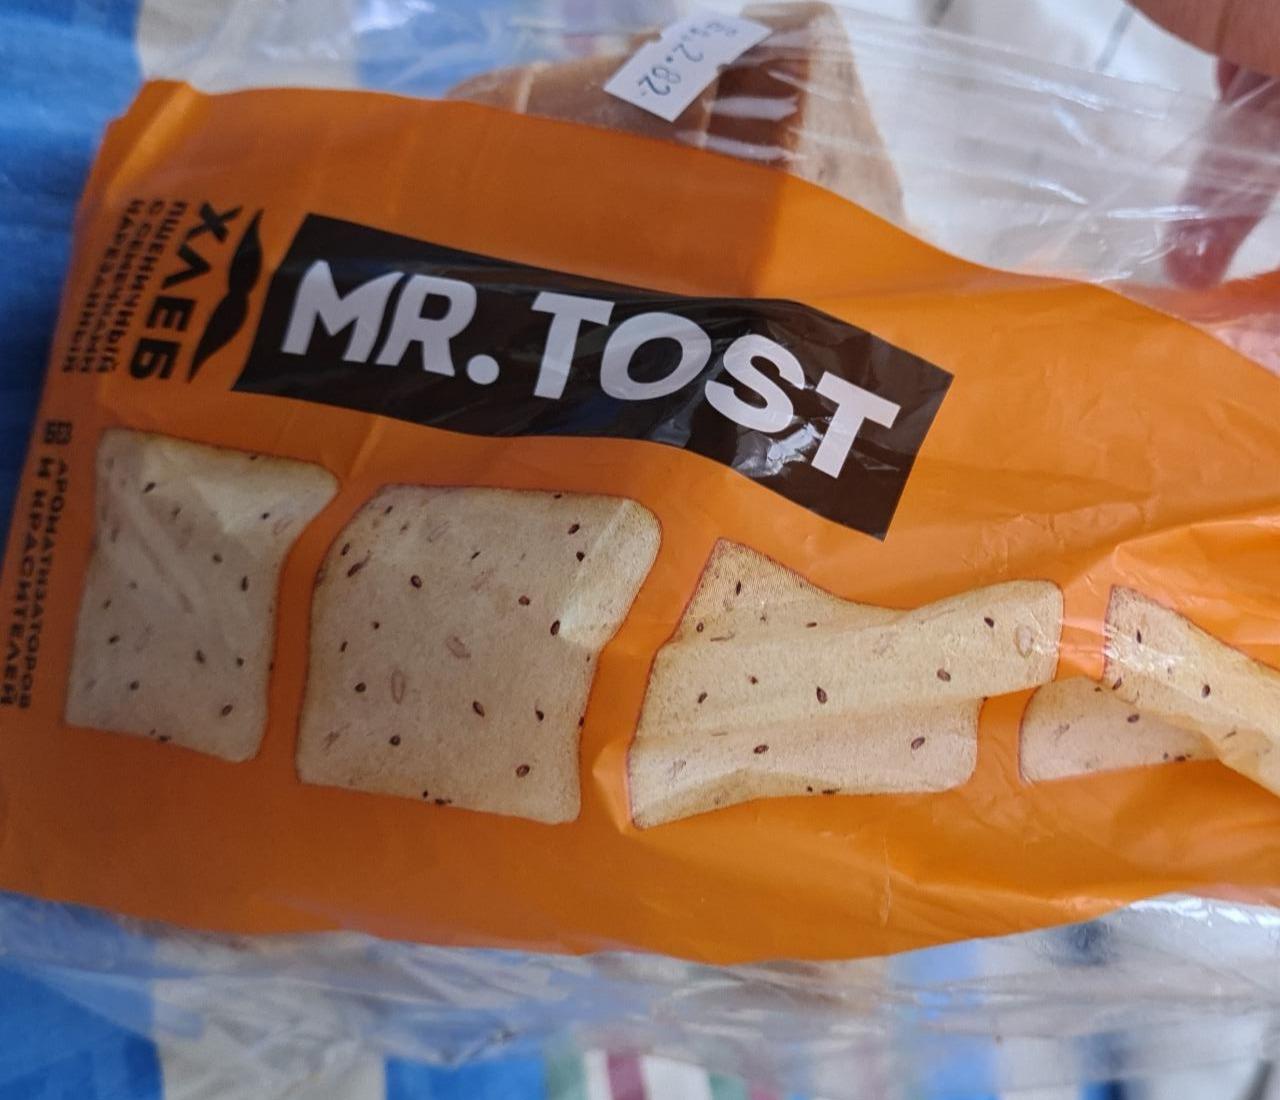 Фото - Хлеб пшеничный с семечками Mr. tost